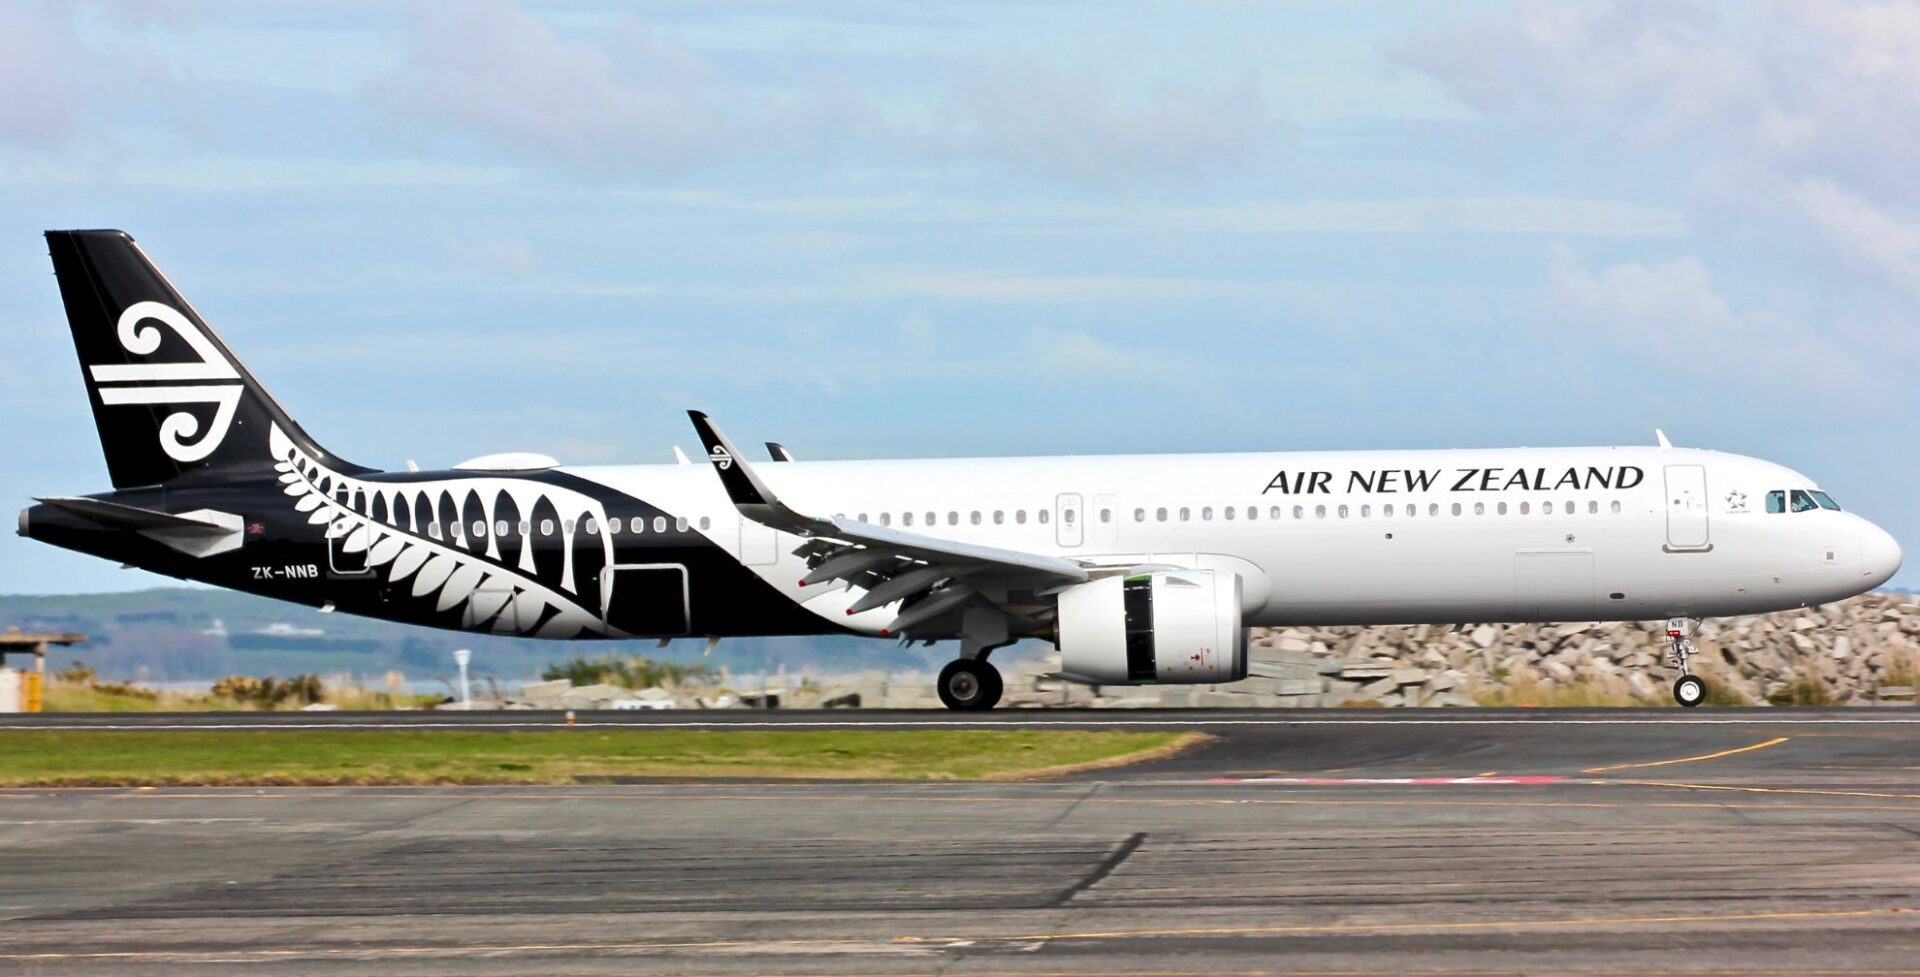 Air New Zealand ไฟลต์ดีเลย์ เพราะน้องเม่นเดินตุ้ยนุ้ยกลางรันเวย์